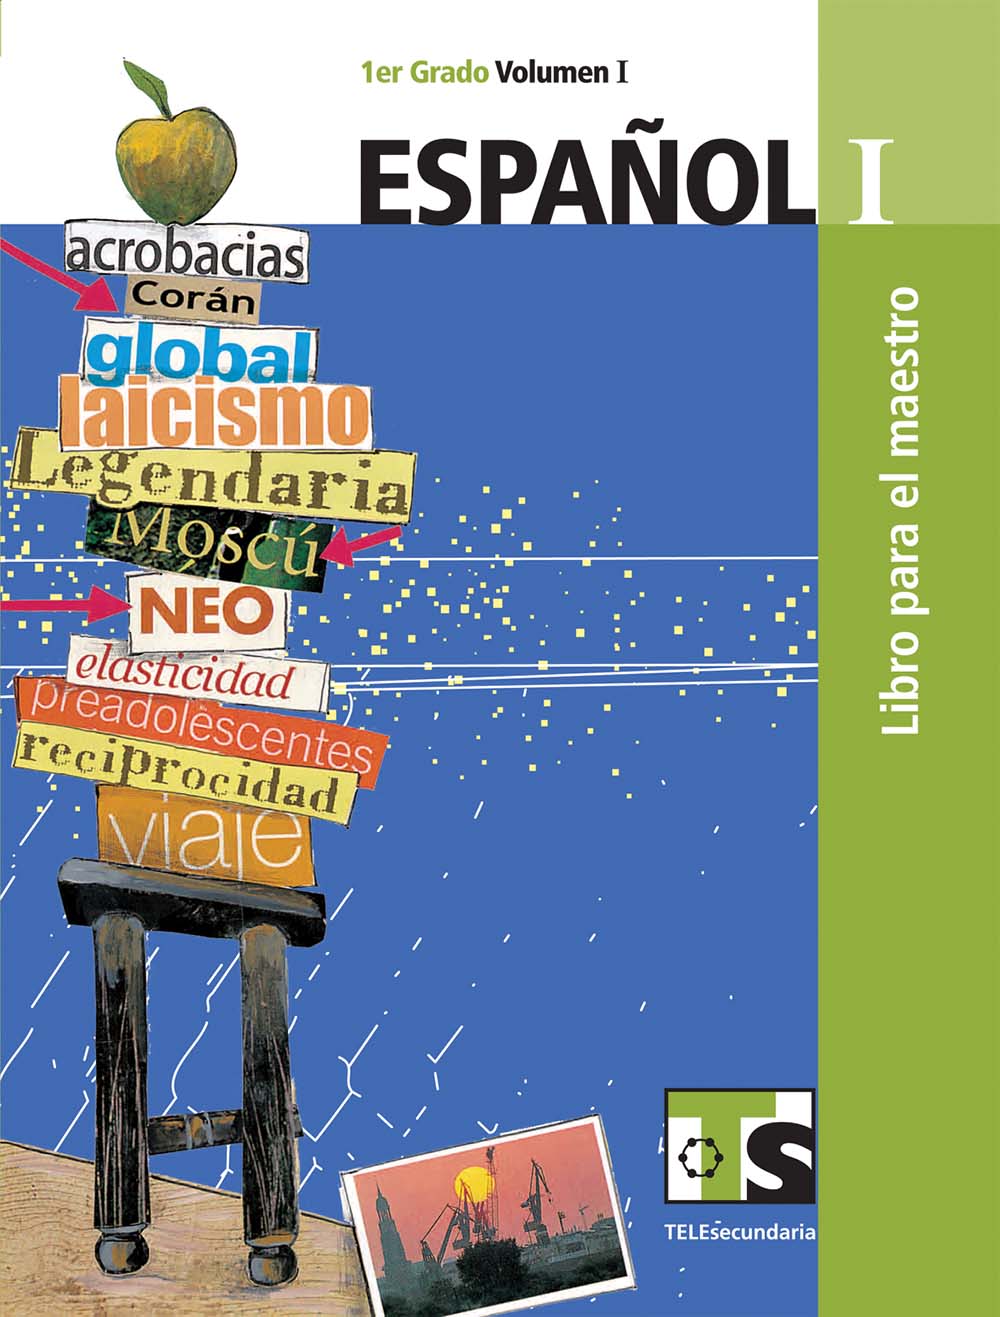 Español I. Vol. I. Libro para el Maestro., Editorial: Secretaría de Educación Pública, Nivel: Telesecundaria, Grado: 1